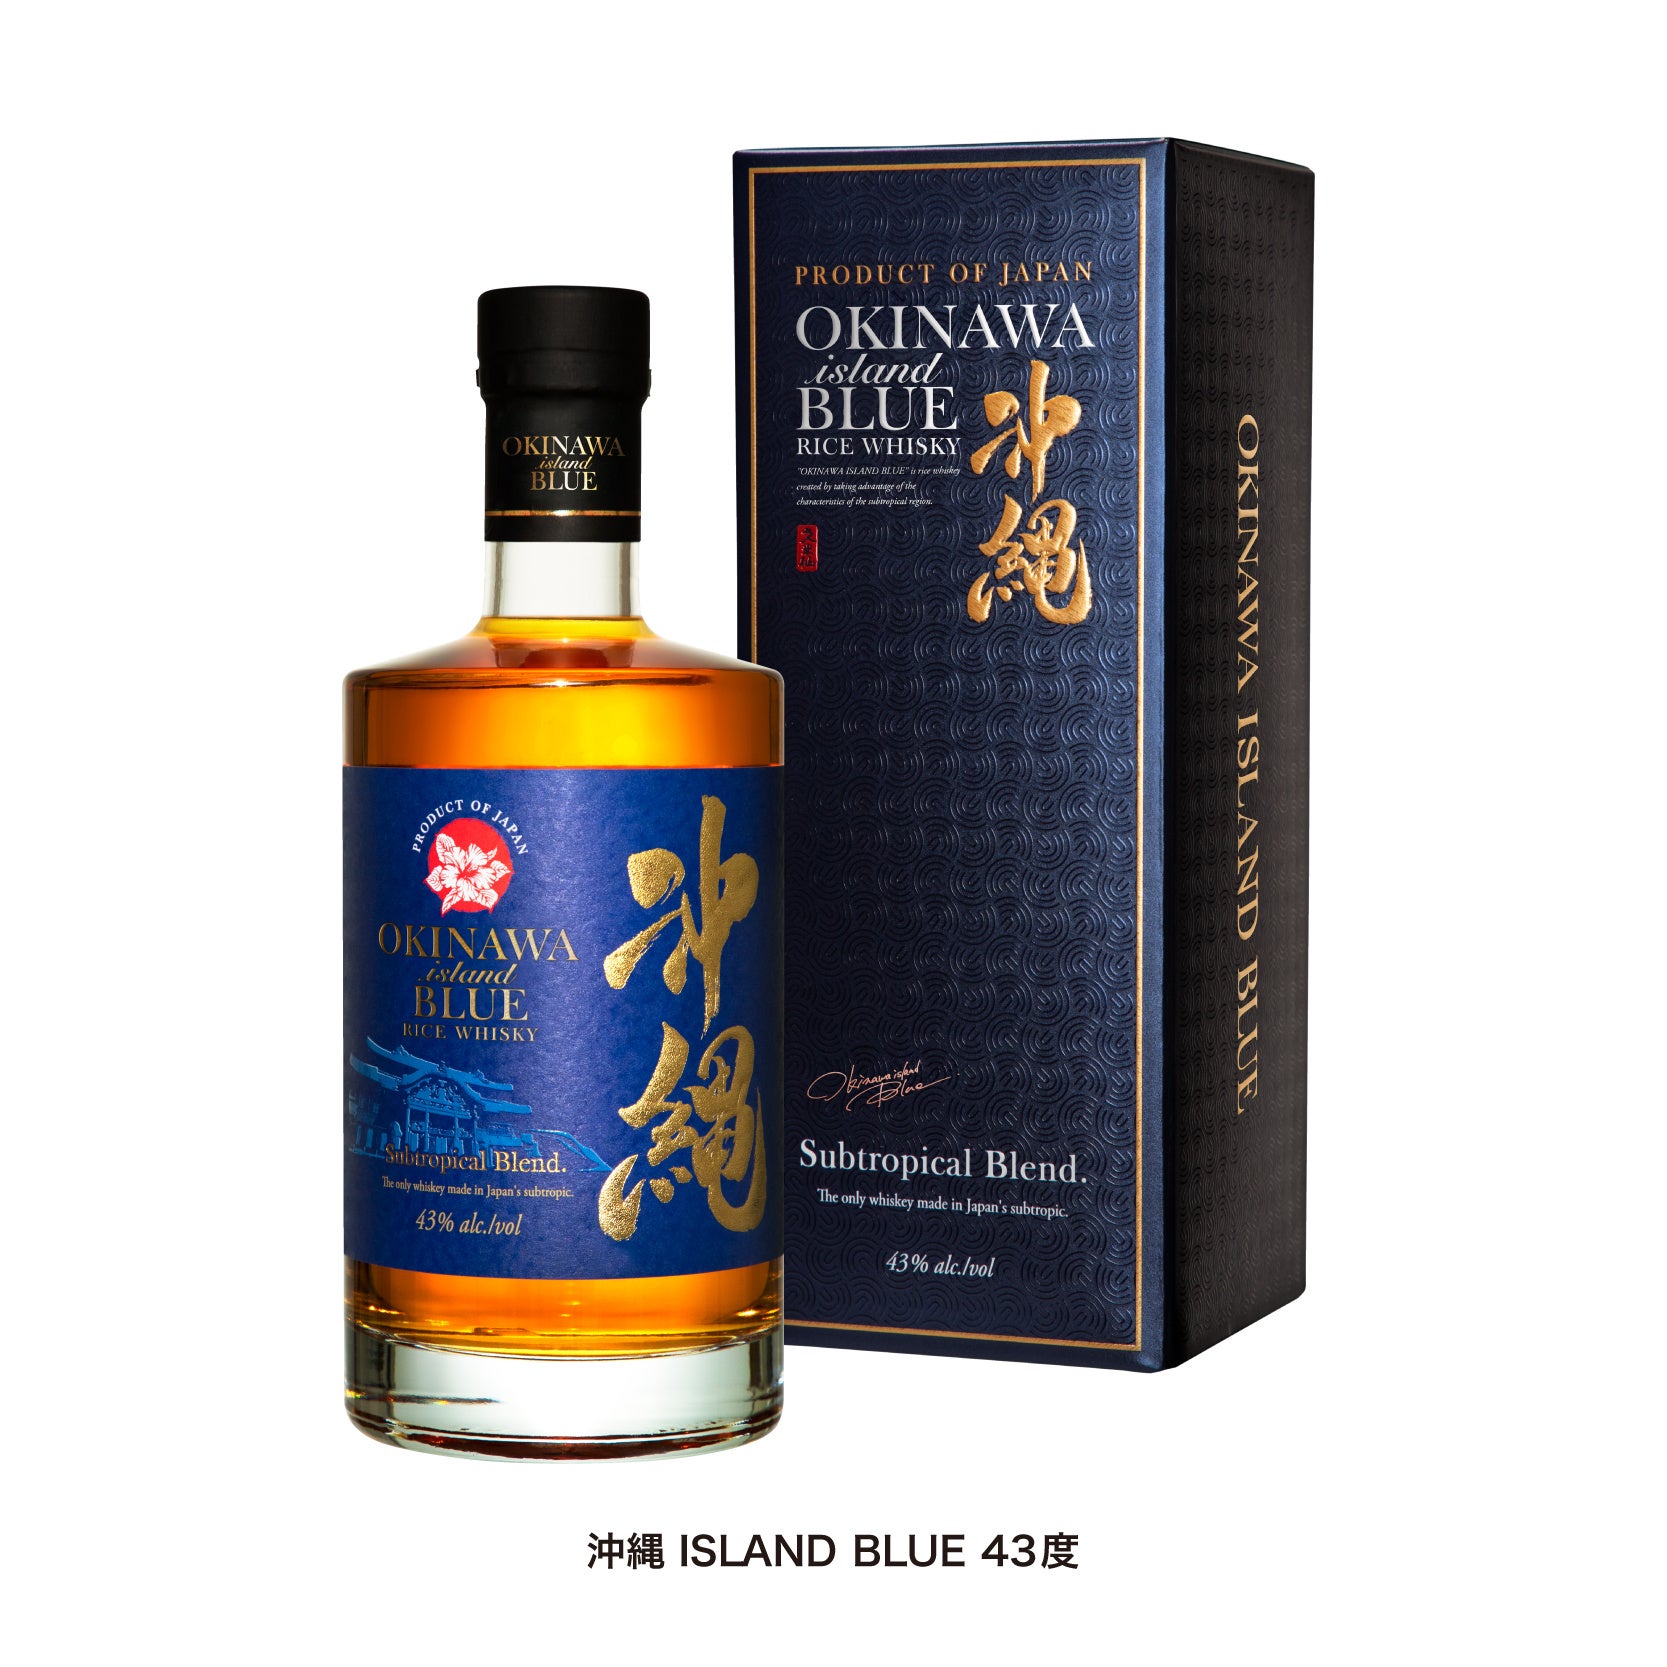 世界3大酒類品評会 で「沖縄 ISLAND BLUE」が2年連続金賞受賞！！